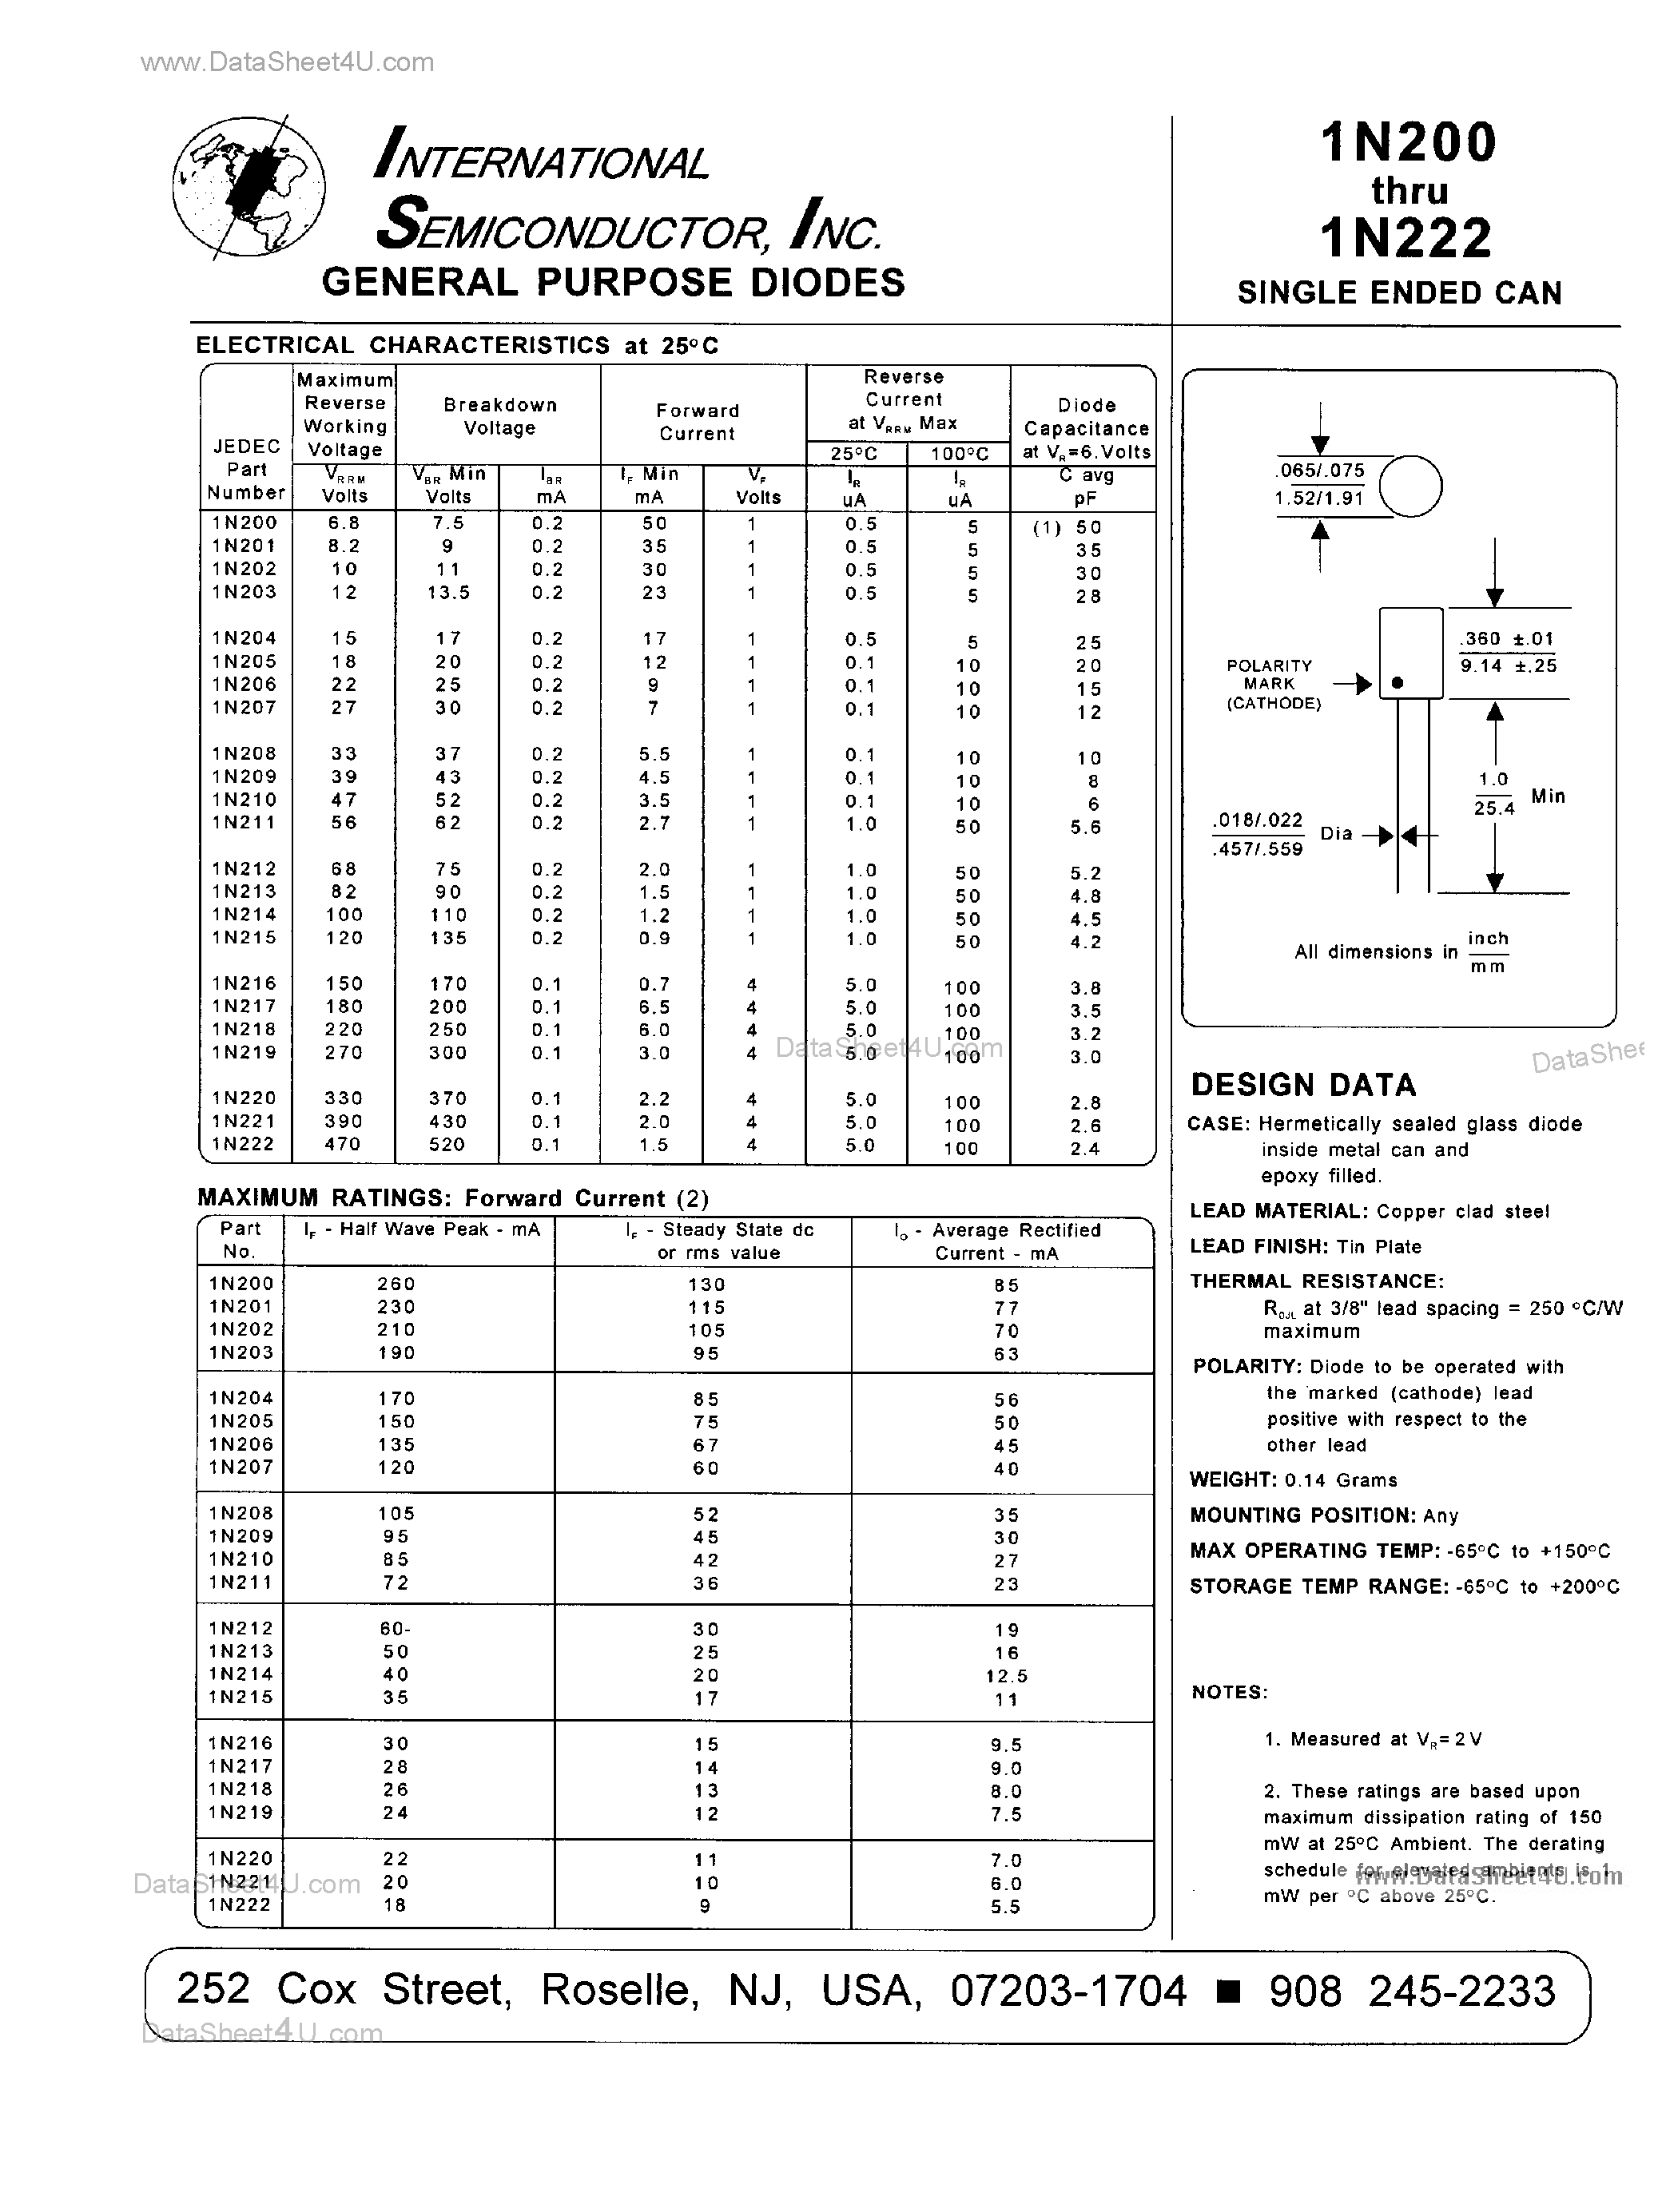 Datasheet 1N200 - (1N200 - 1N222) General Purpose Diodes page 1